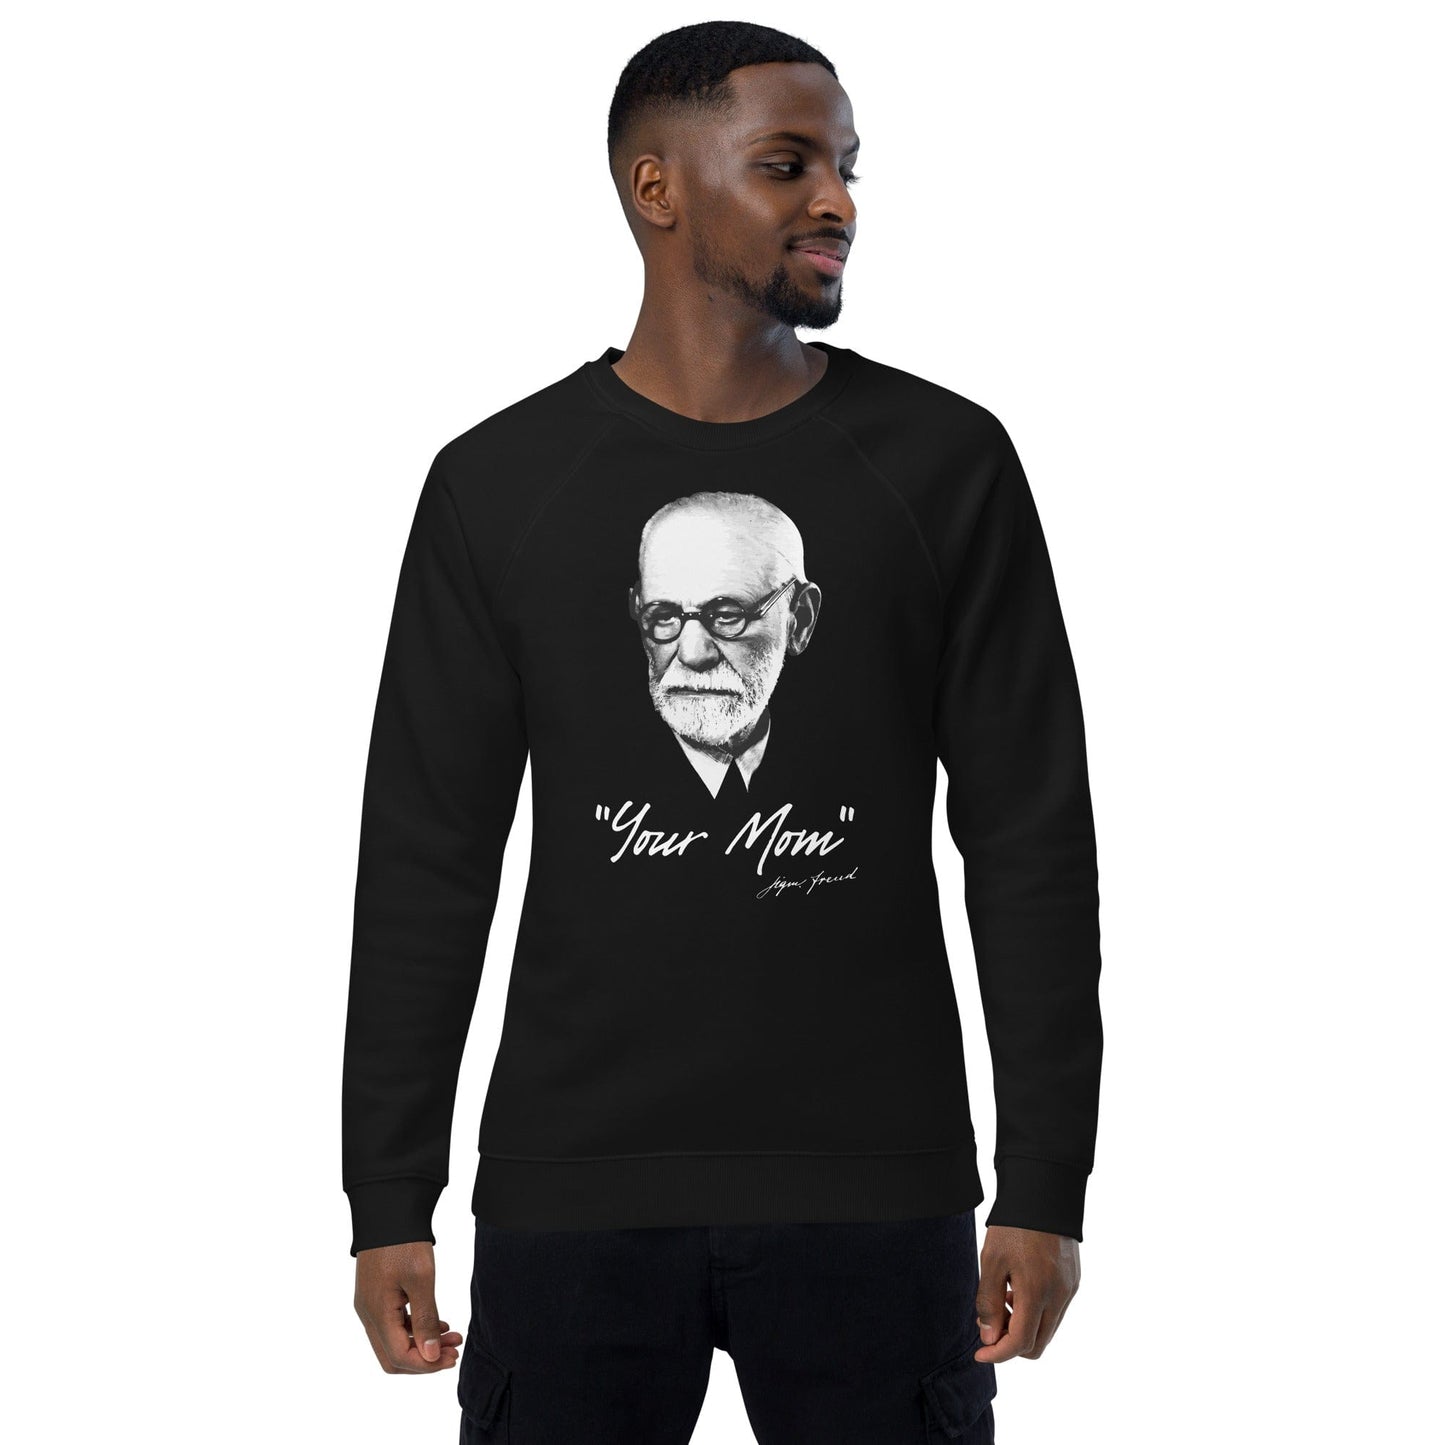 Sigmund Freud - Your Mom (US) - Eco Sweatshirt